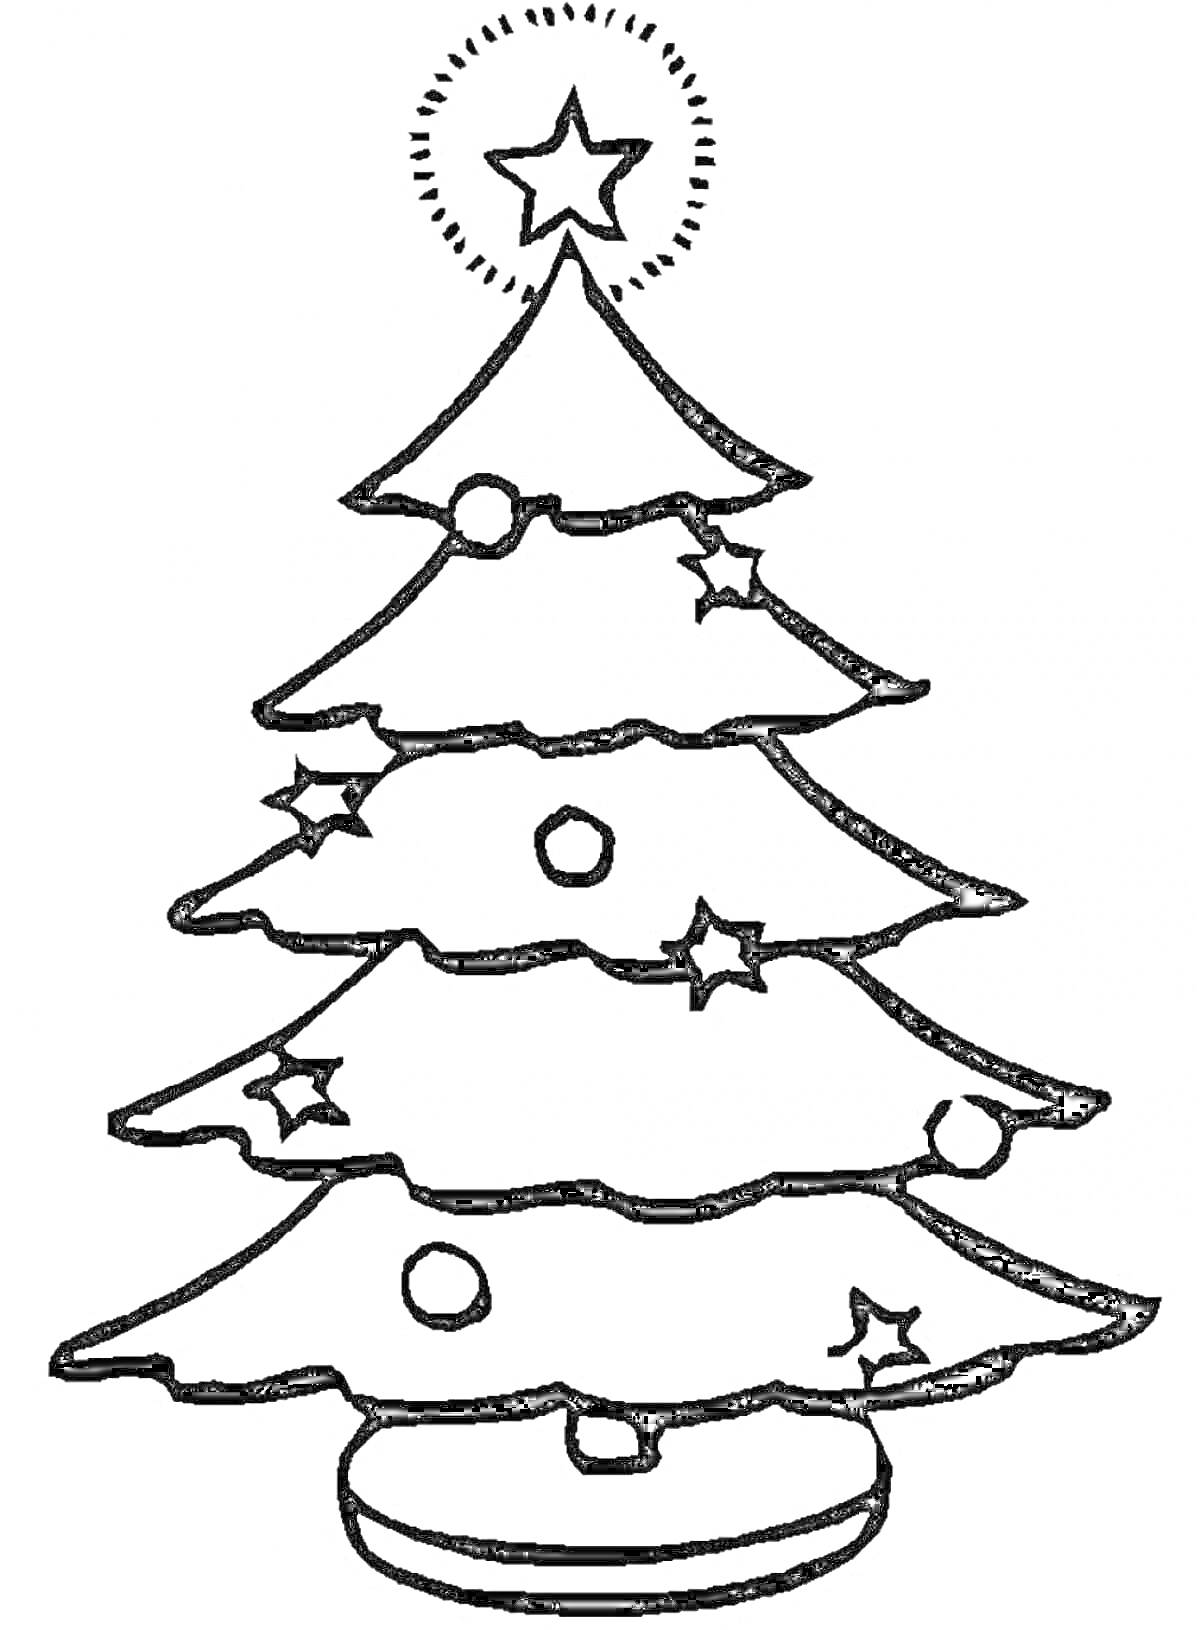 Новогодняя елка с круглыми и звездными украшениями, с большой звездой на вершине и стоящая на подставке.